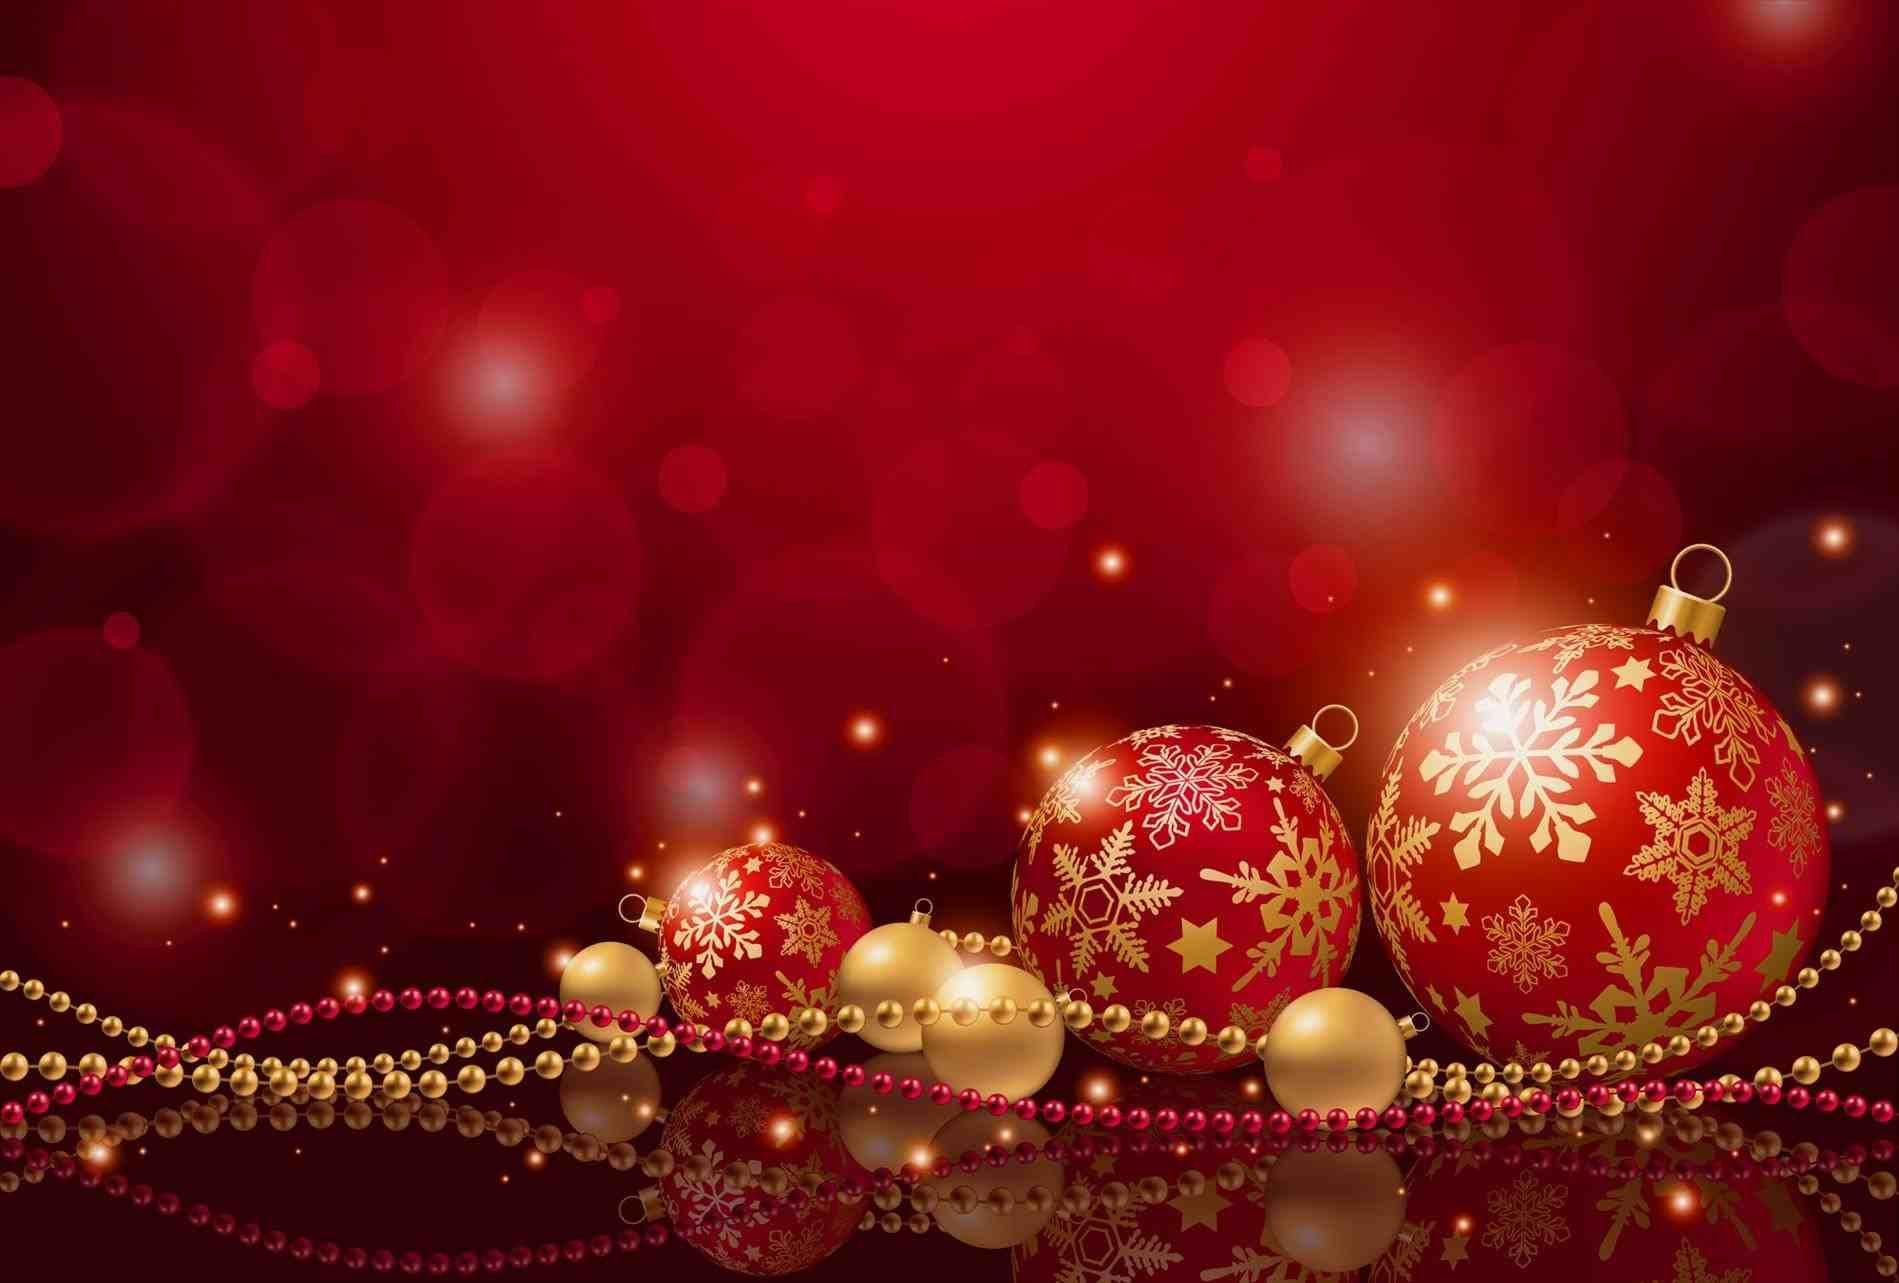 Hình nền Giáng sinh màu đỏ và vàng miễn phí sẽ mang đến cho bạn một loạt các hình nền đẹp, rực rỡ và sang trọng cho mùa lễ hội này. Hãy xem những hình ảnh này để tìm kiếm những ý tưởng trang trí tuyệt vời và phù hợp với phong cách của bạn.